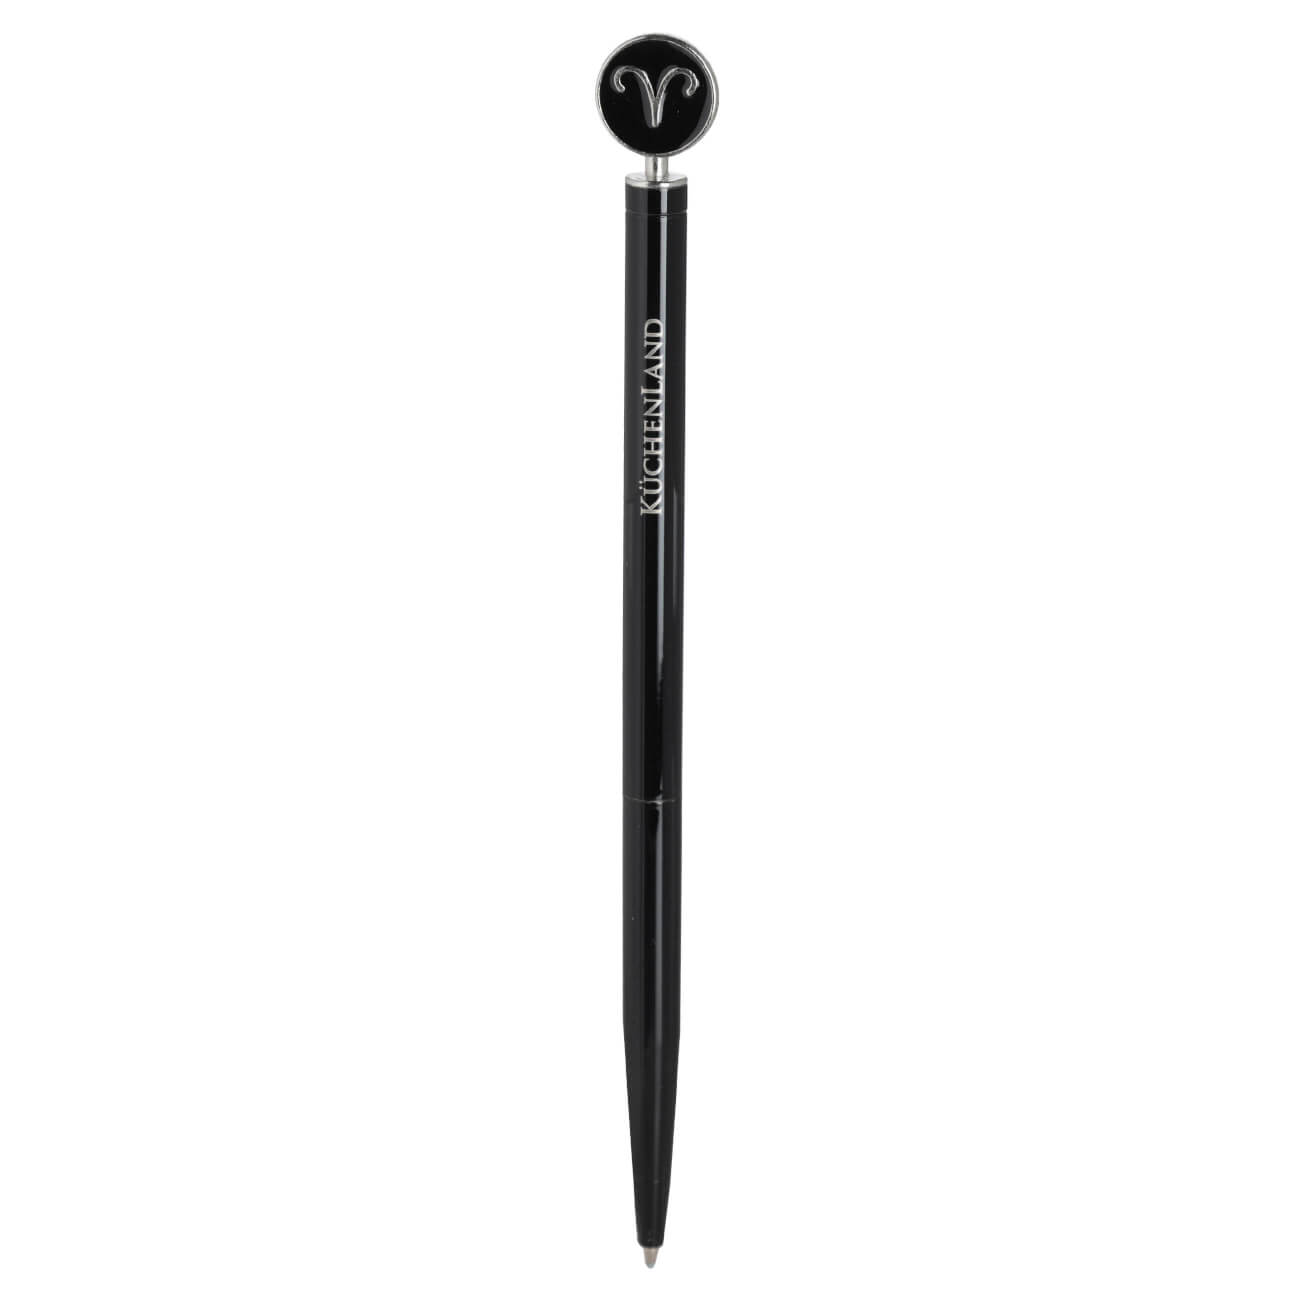 Ручка шариковая, 15 см, с фигуркой, сталь, черно-серебристая, Овен, Zodiac ручка подарочная шариковая поворотная в пластиковом футляре